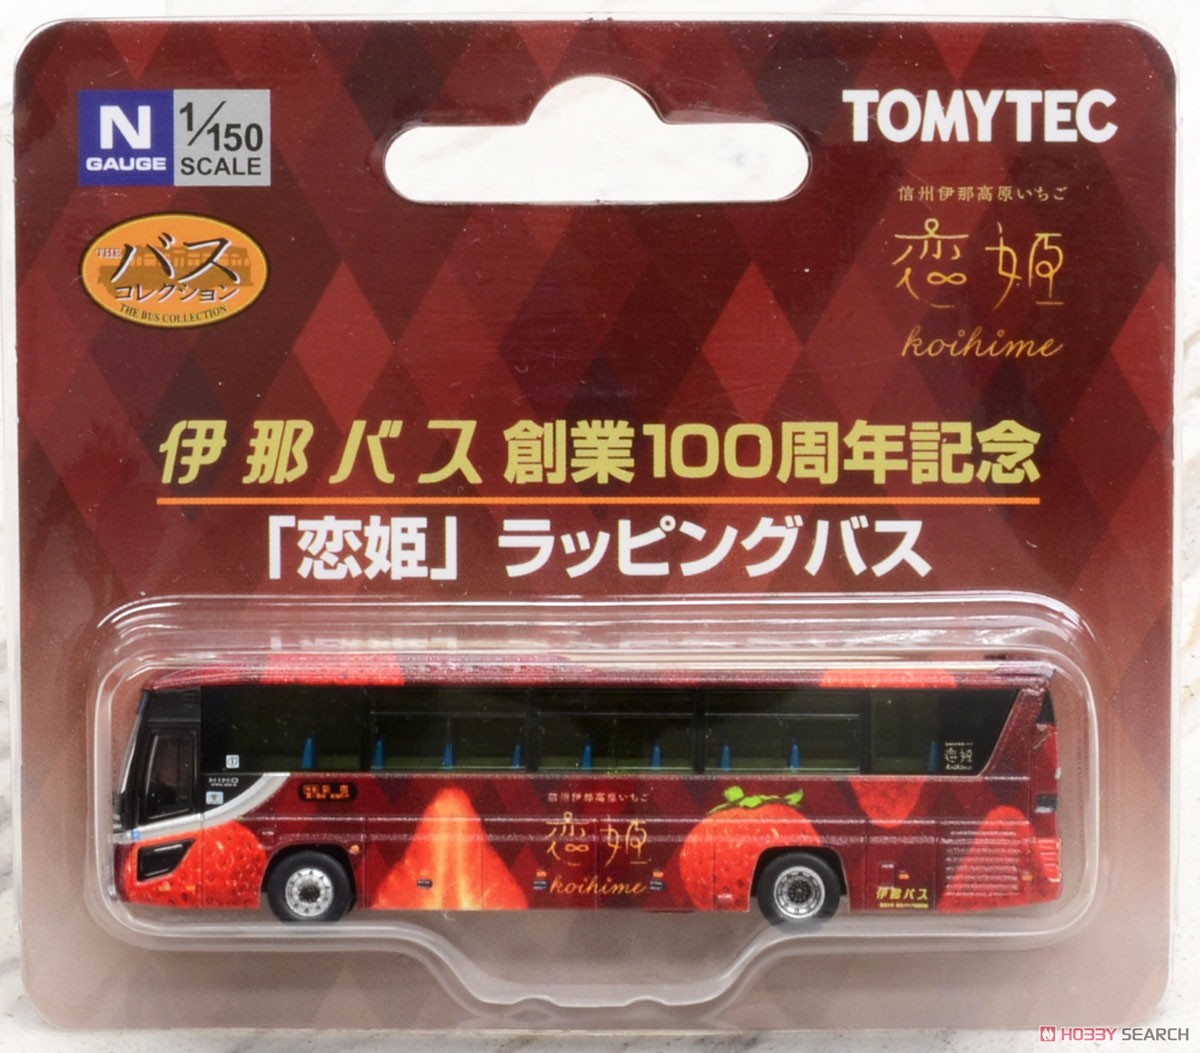 ザ・バスコレクション 伊那バス創業100周年記念 「恋姫」ラッピングバス (鉄道模型) パッケージ1